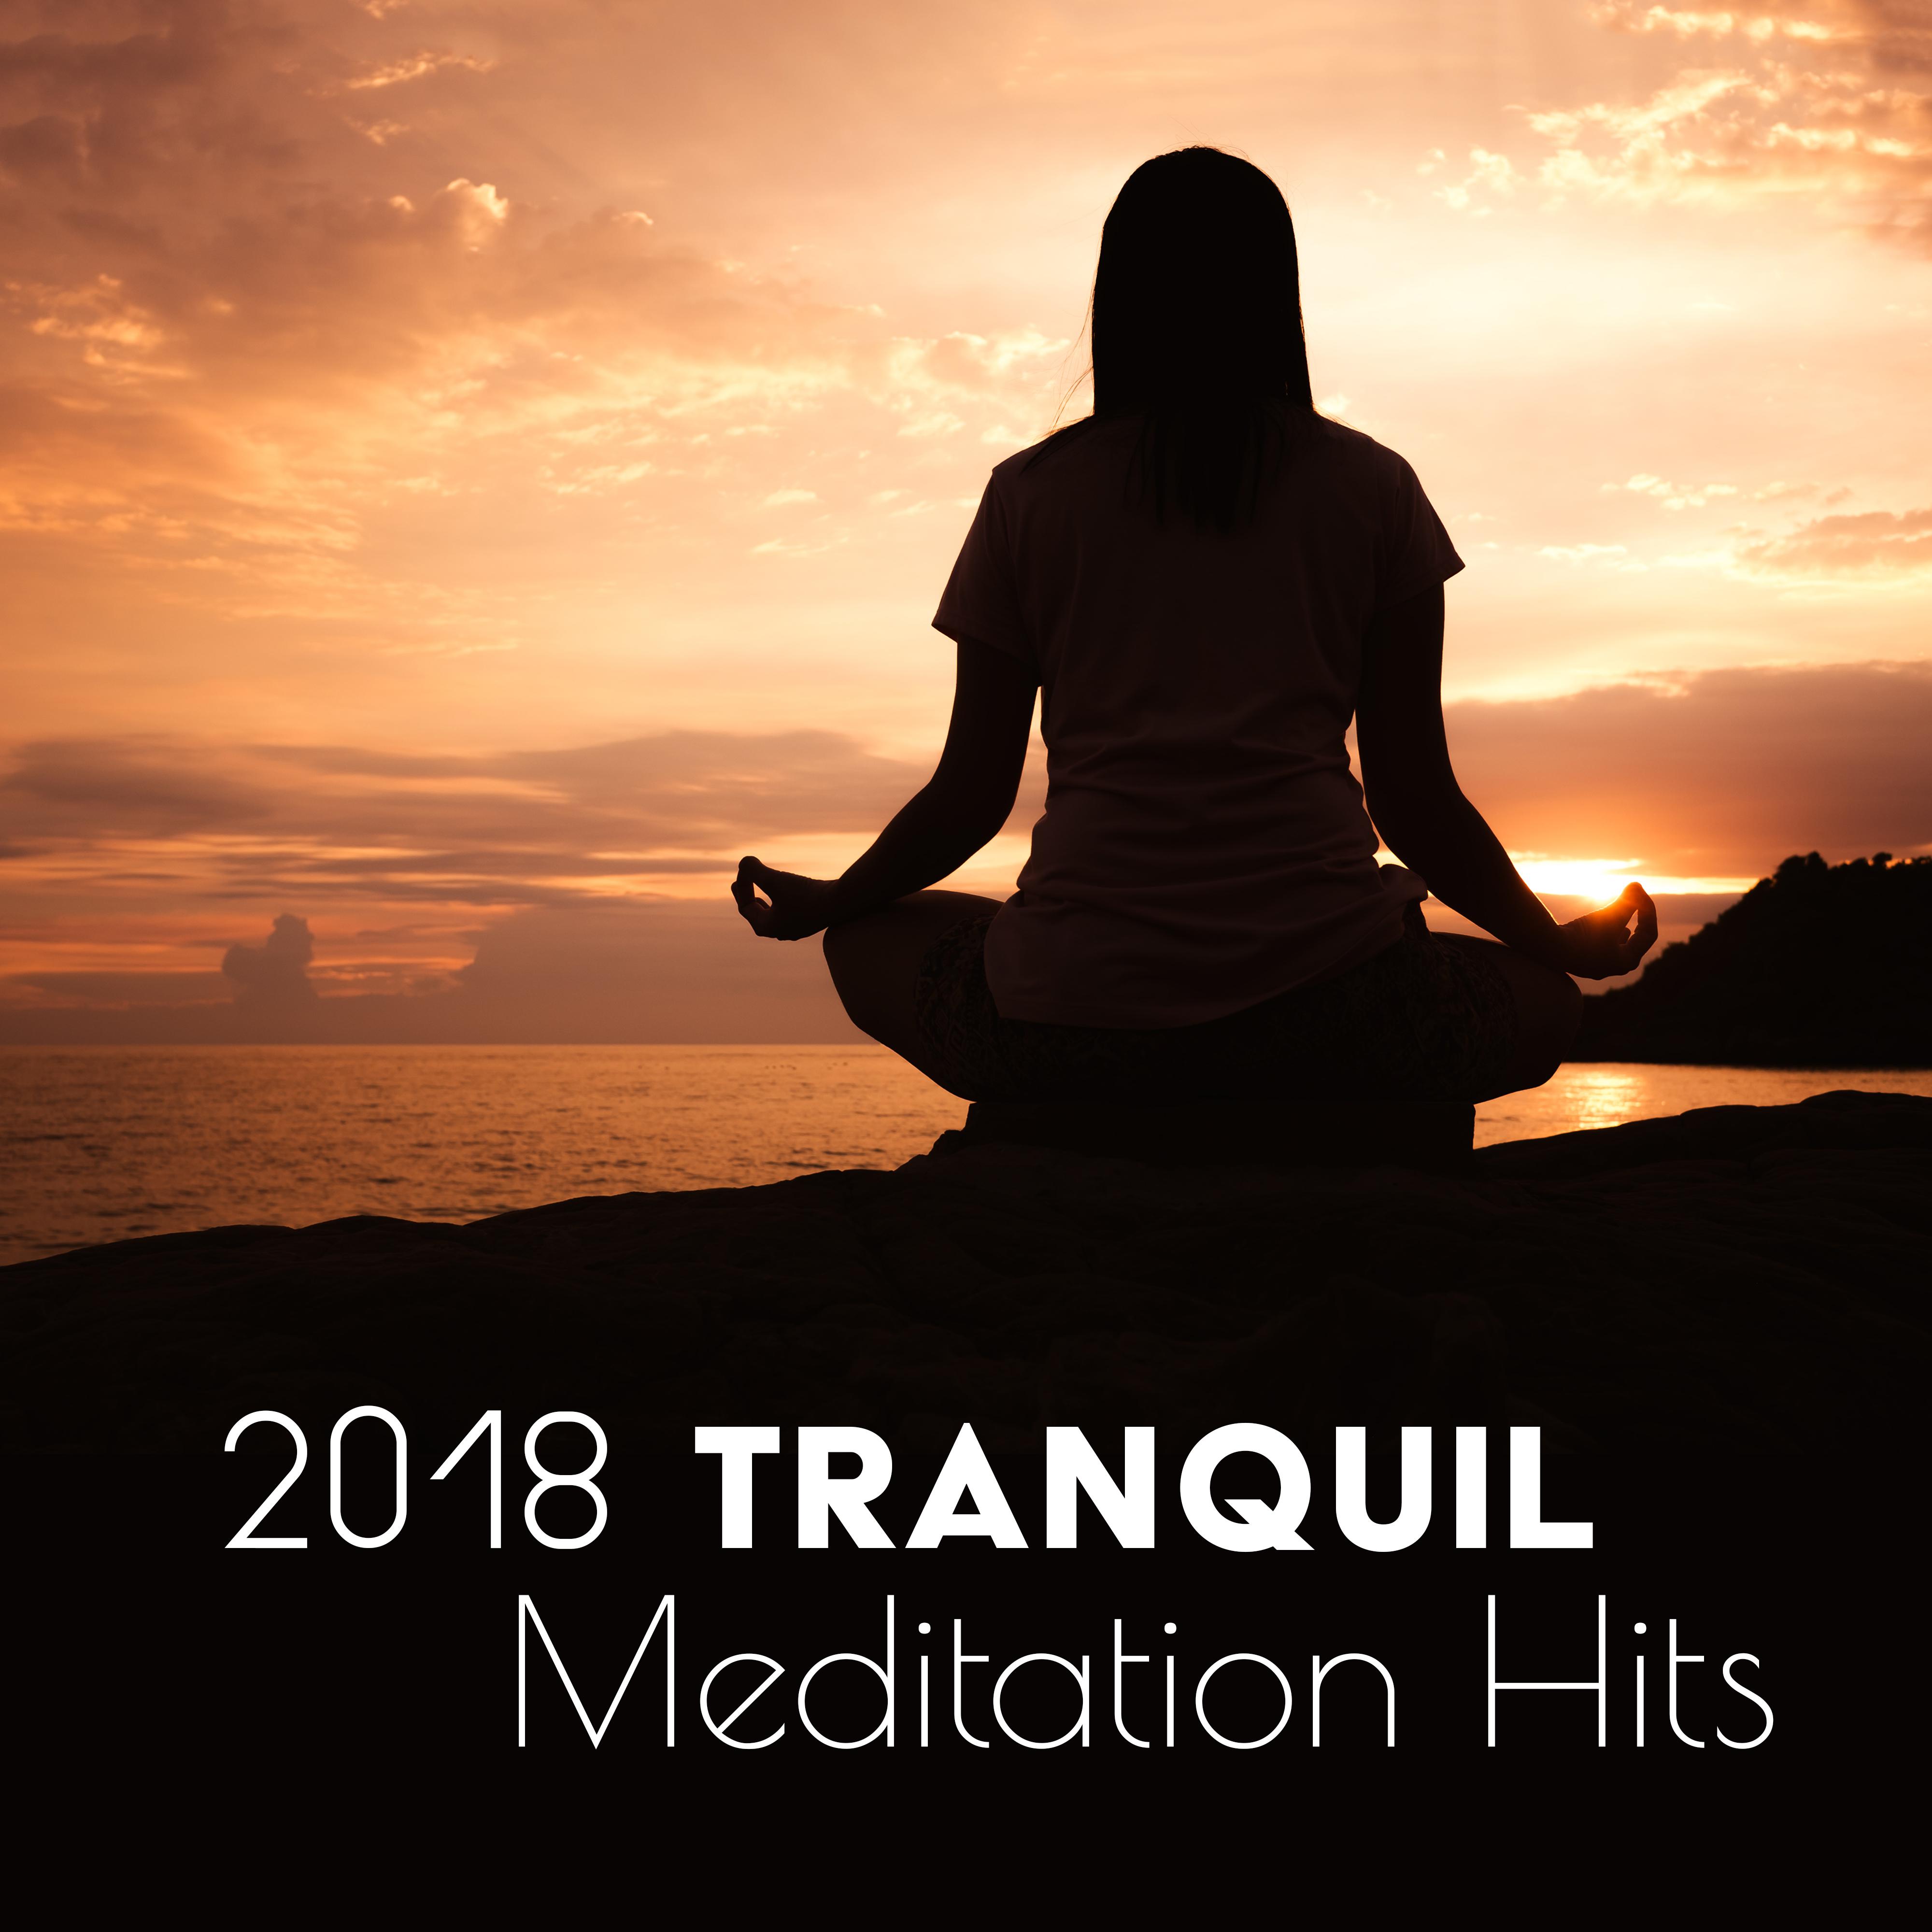 2018 Tranquil Meditation Hits